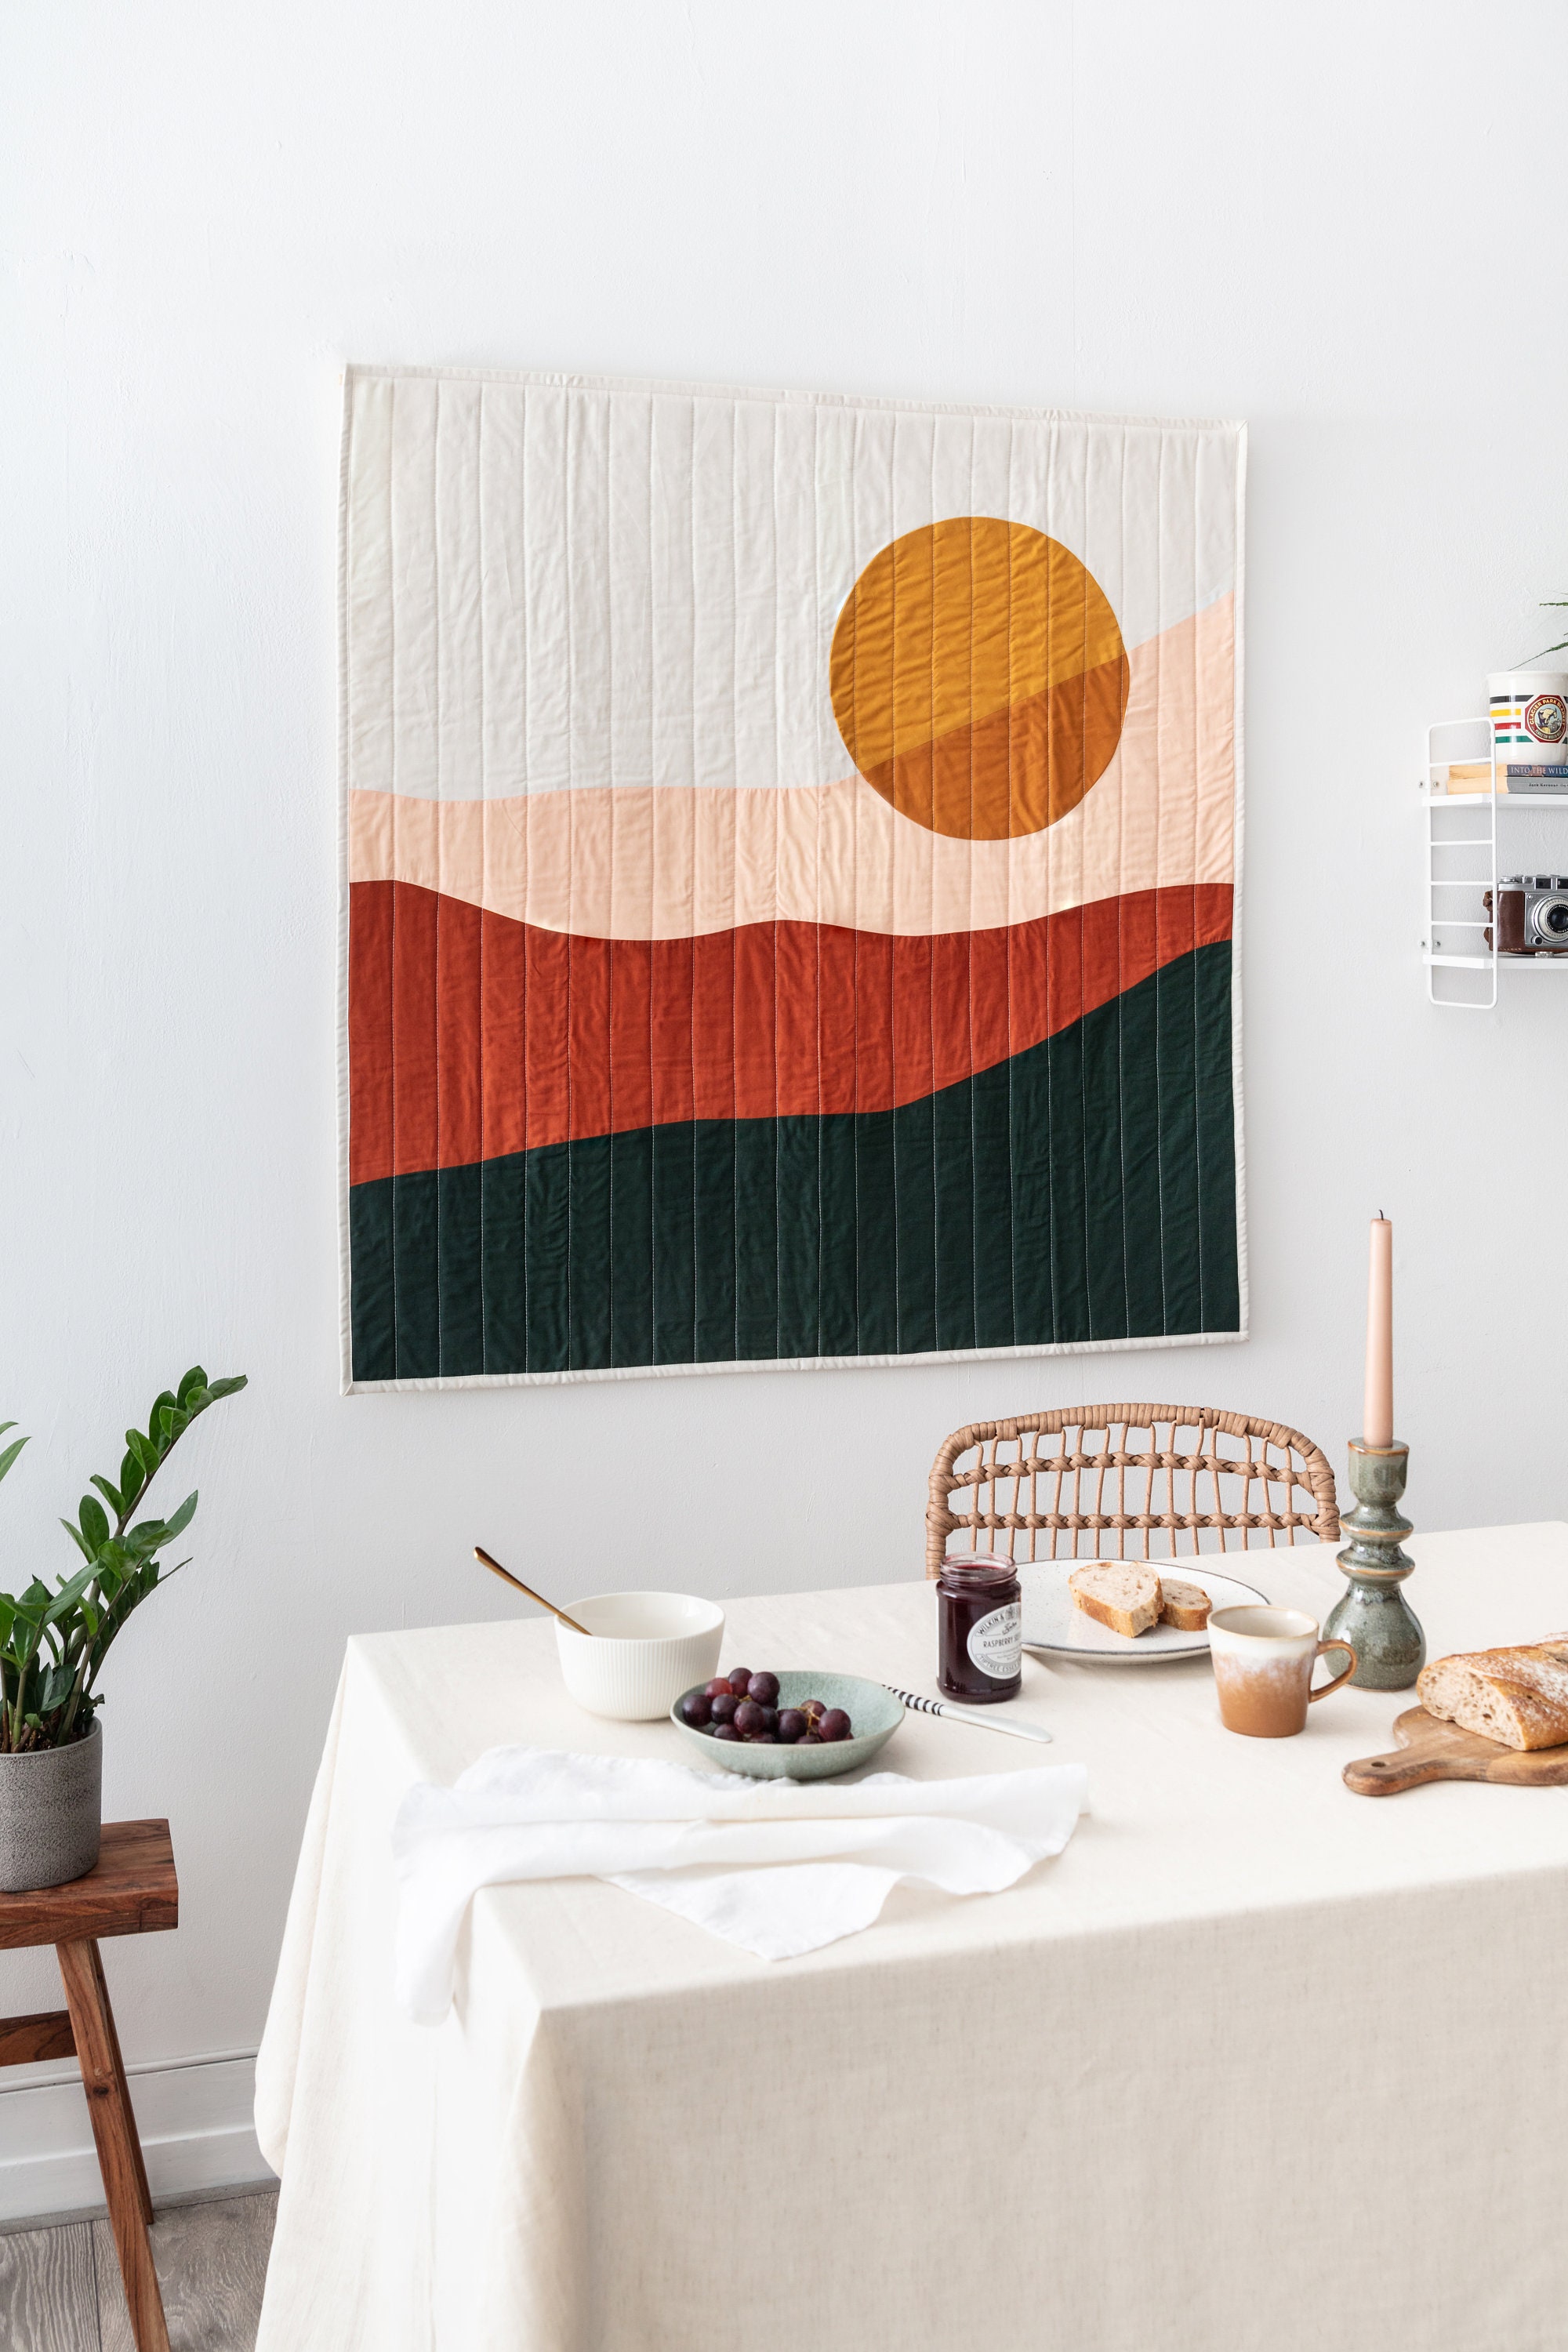 Custom Quilt Hanger, Rug Wall Hanging Frame, Tapestry Wall Hanger